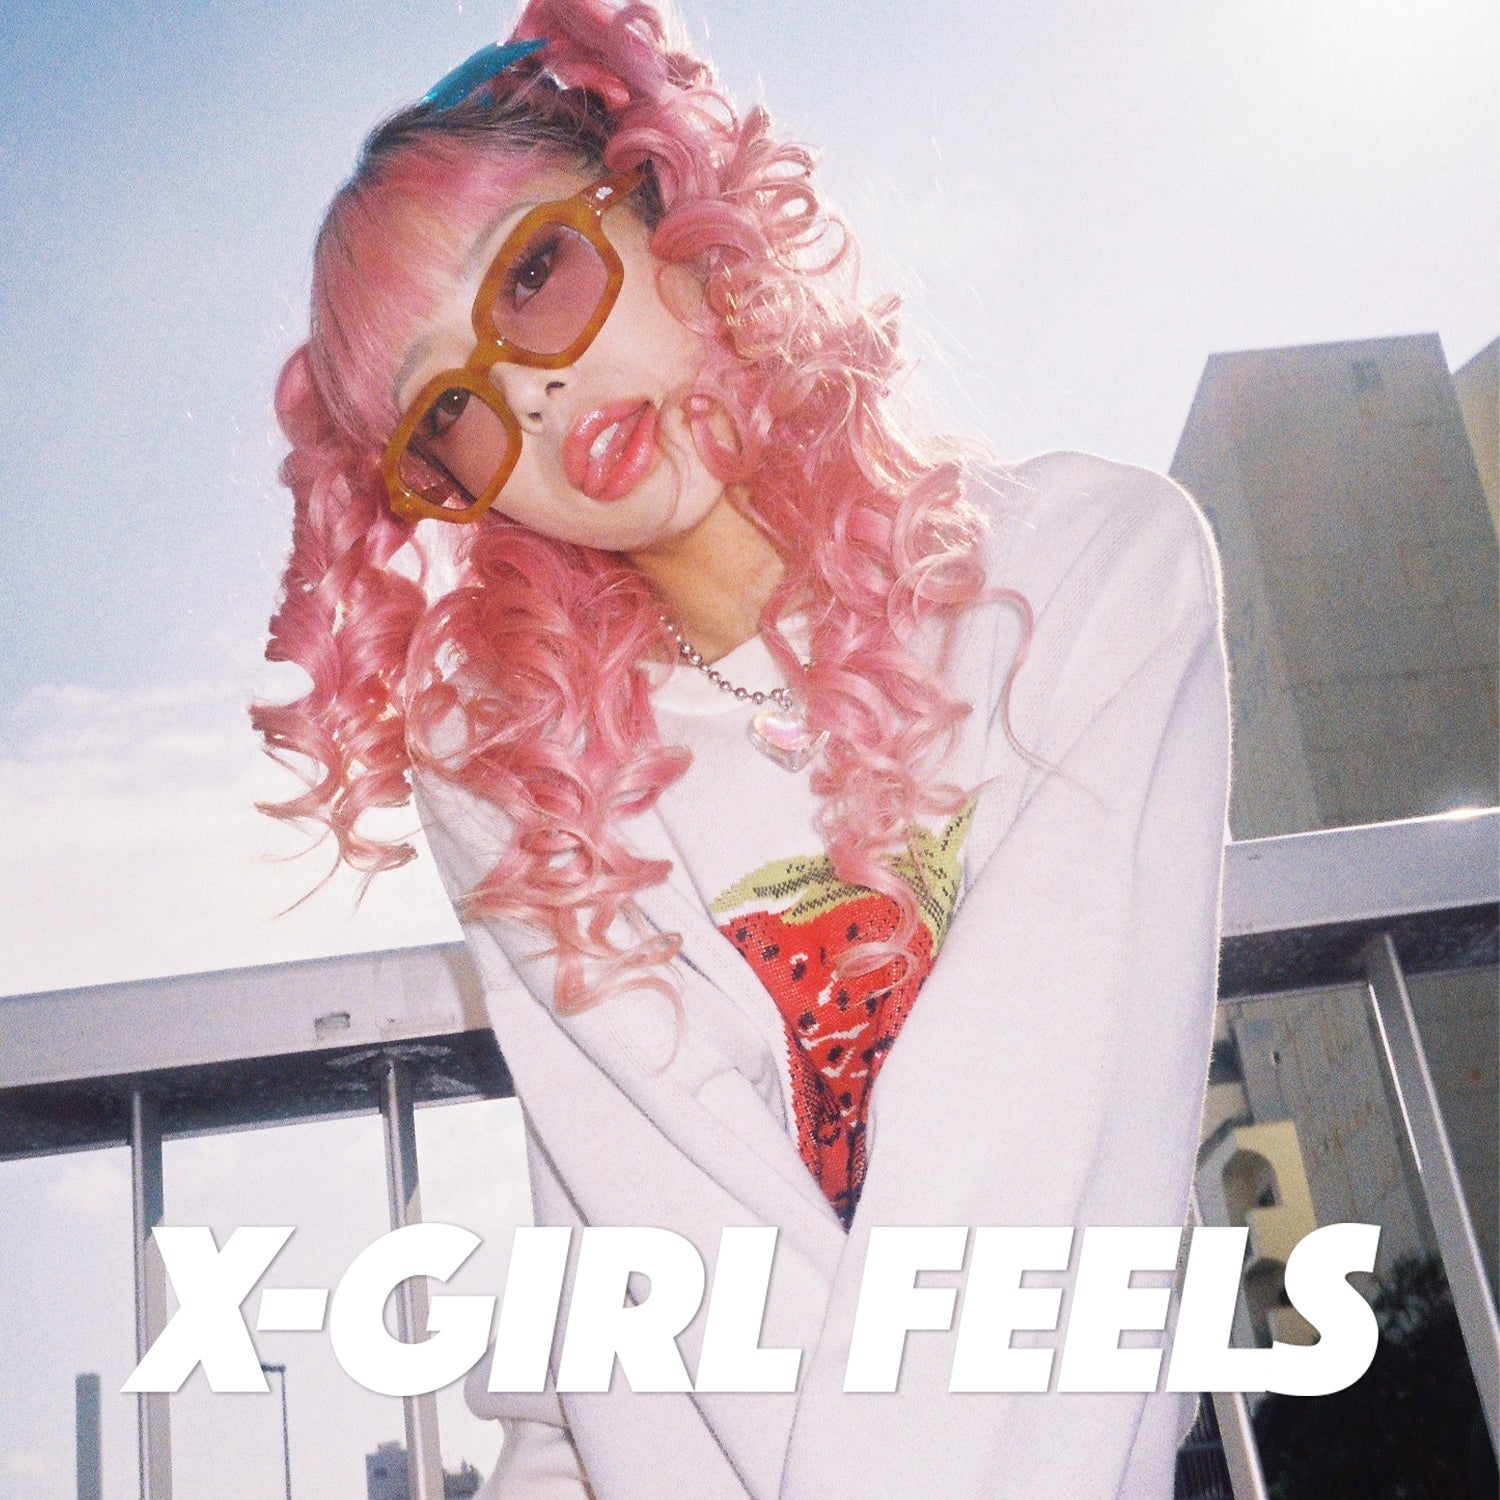 X-girl feels vol.26